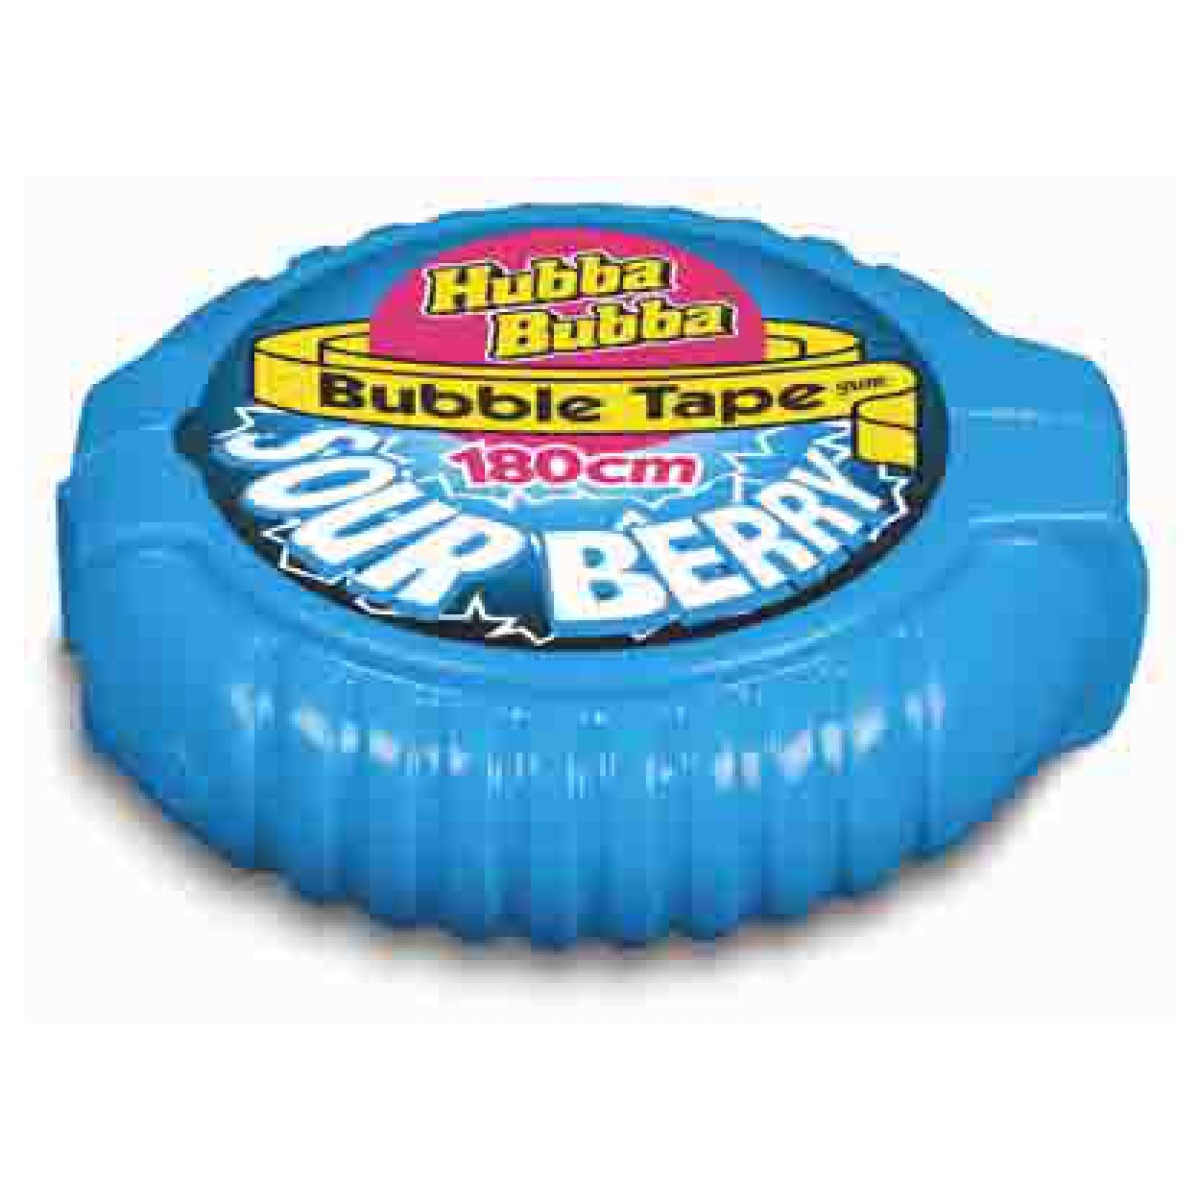 Hubba Bubba Bubble Tape → REGAL